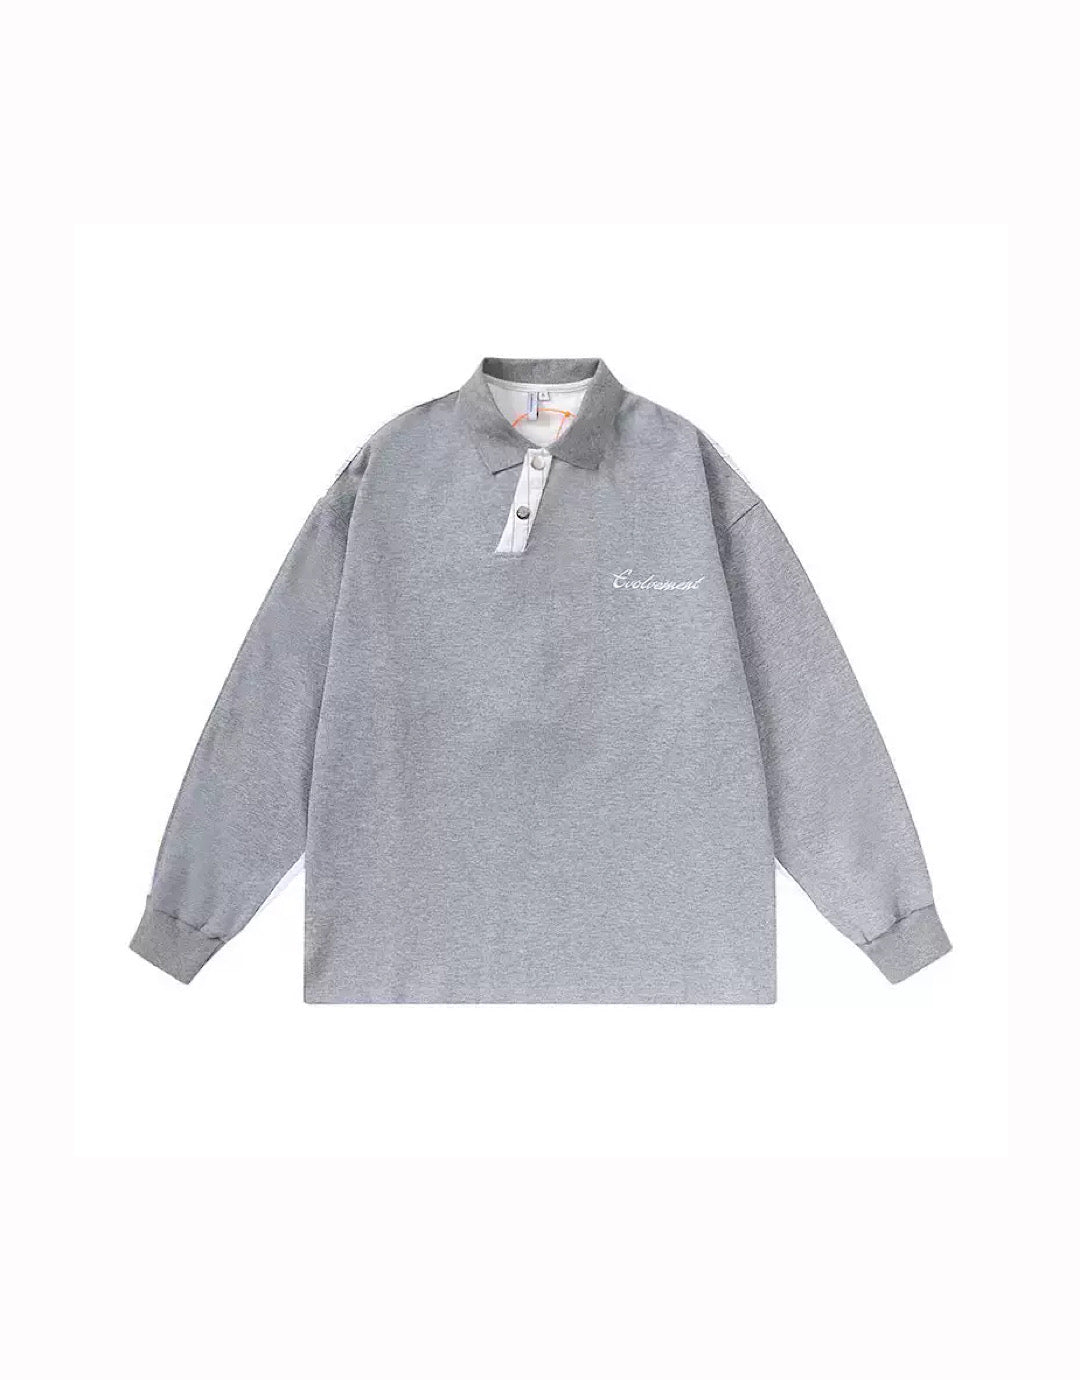 rebel gray polo shirt  US1882